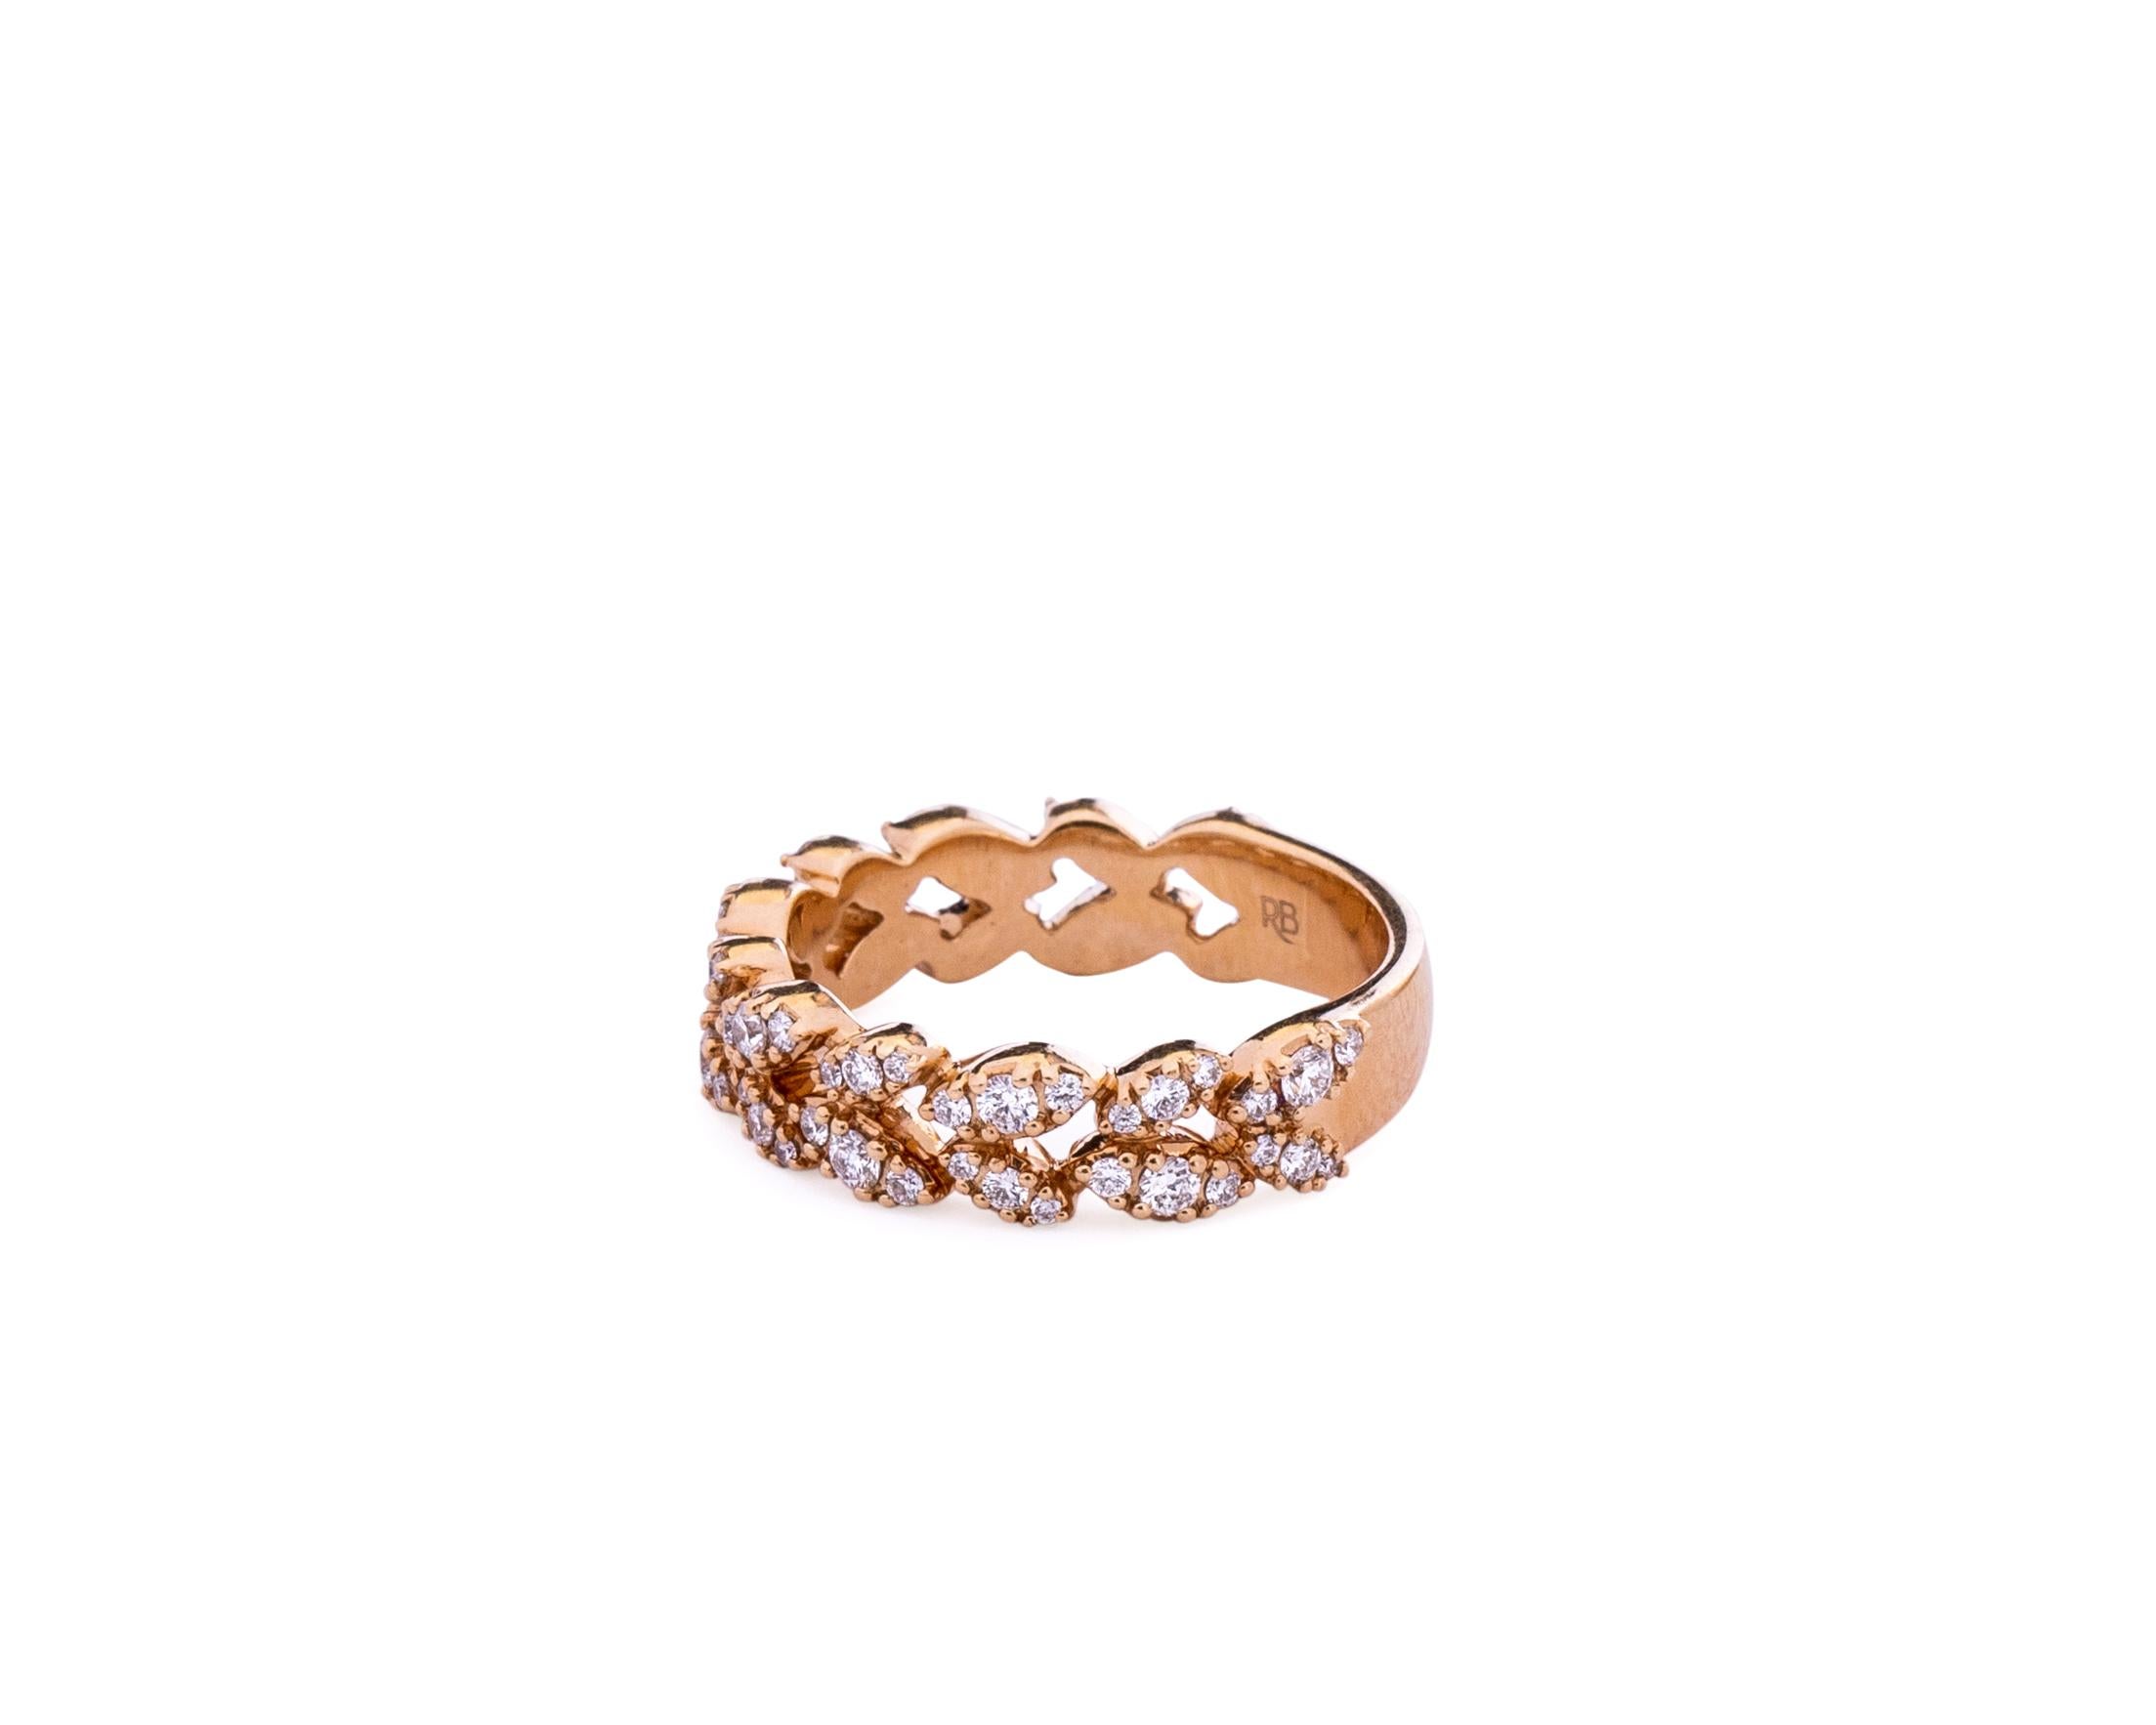 Round Cut 1 Carat Diamond Ring Band in 18 Karat Gold